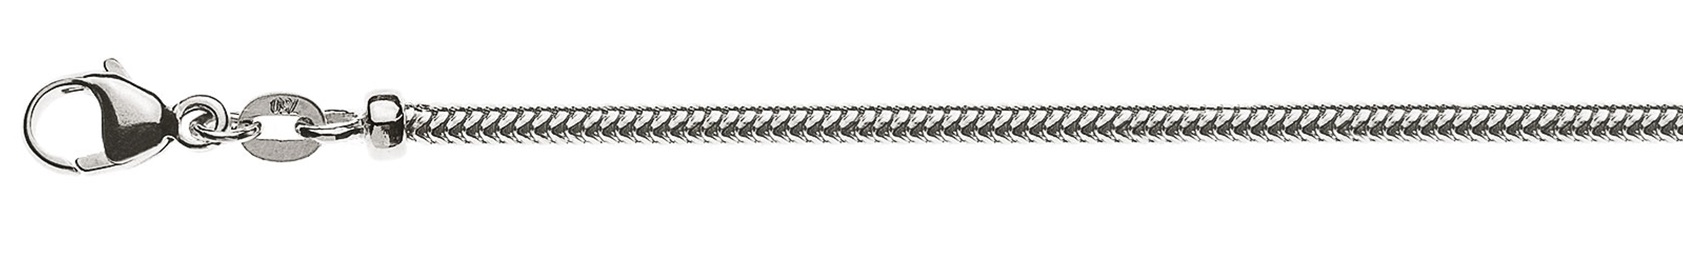 AURONOS Prestige Halskette Weissgold 18K Schlangenkette 45cm 2.4mm